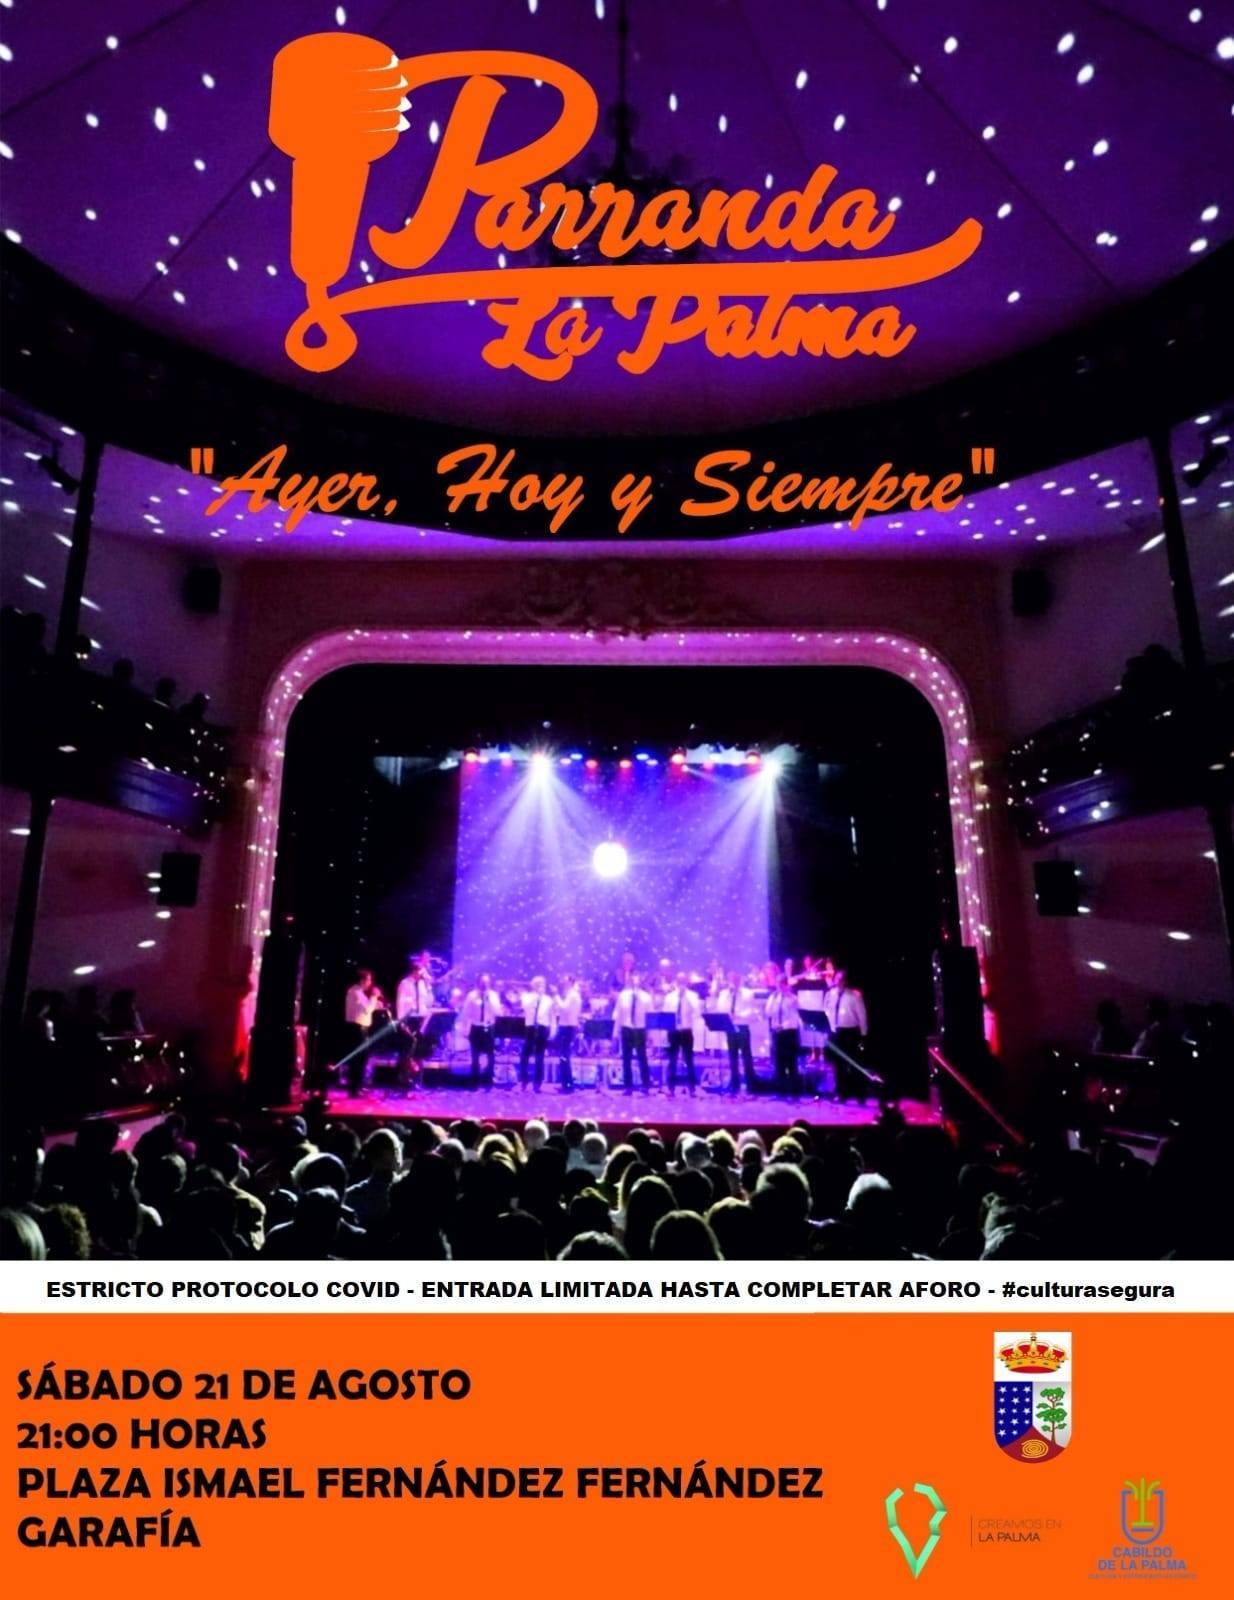 Parranda La Palma (2021) - Garafía (Santa Cruz de Tenerife)